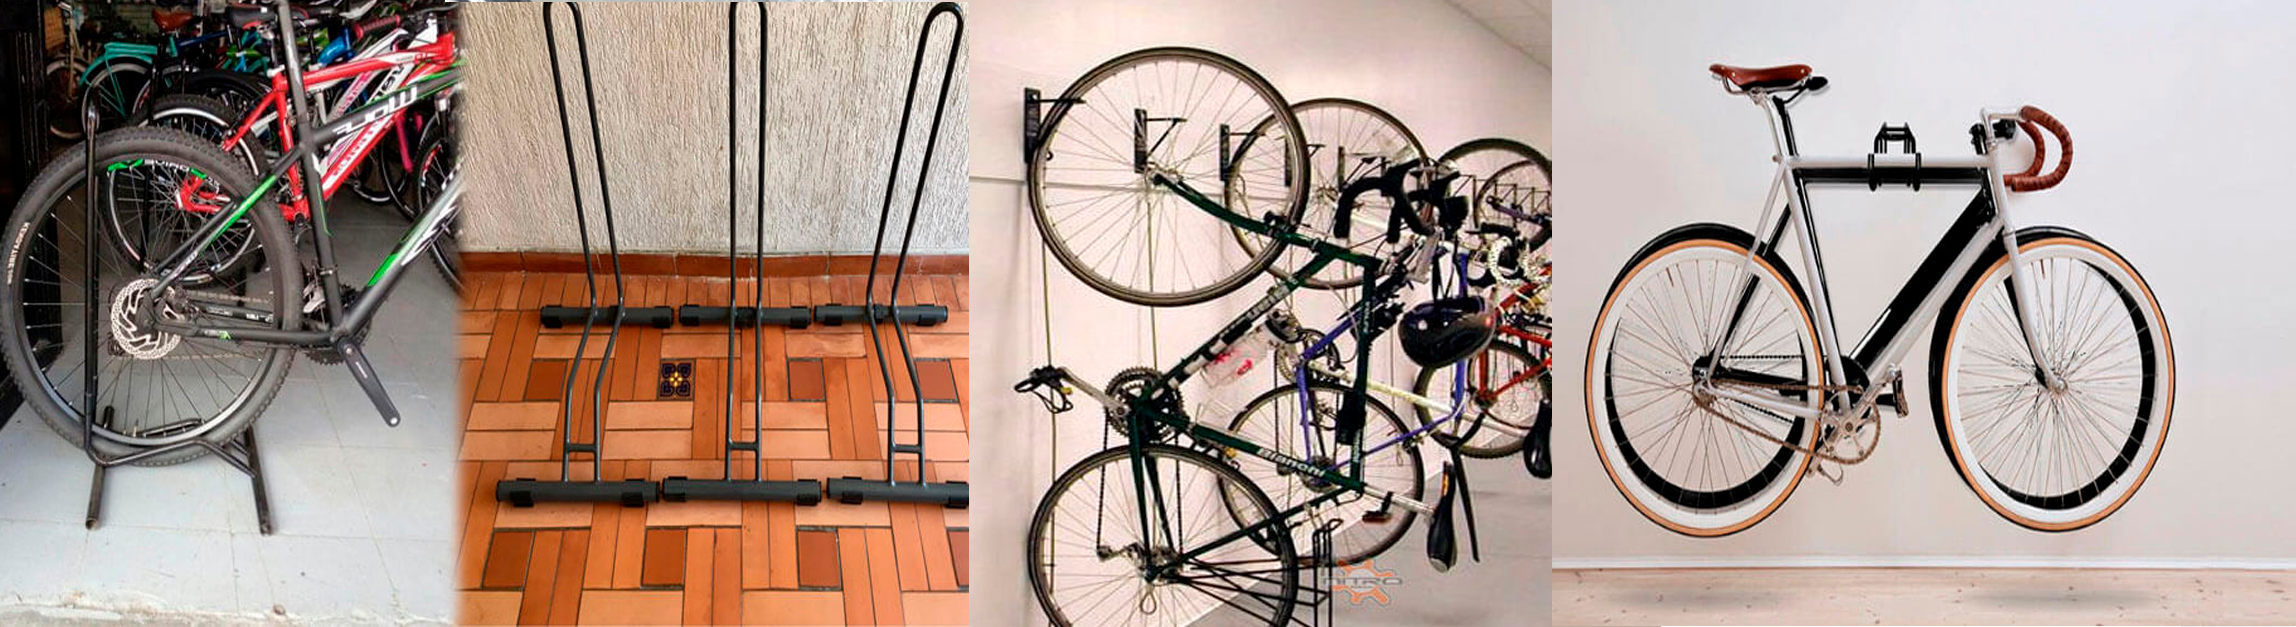 soportes de piso pared o anclados para bicicletas